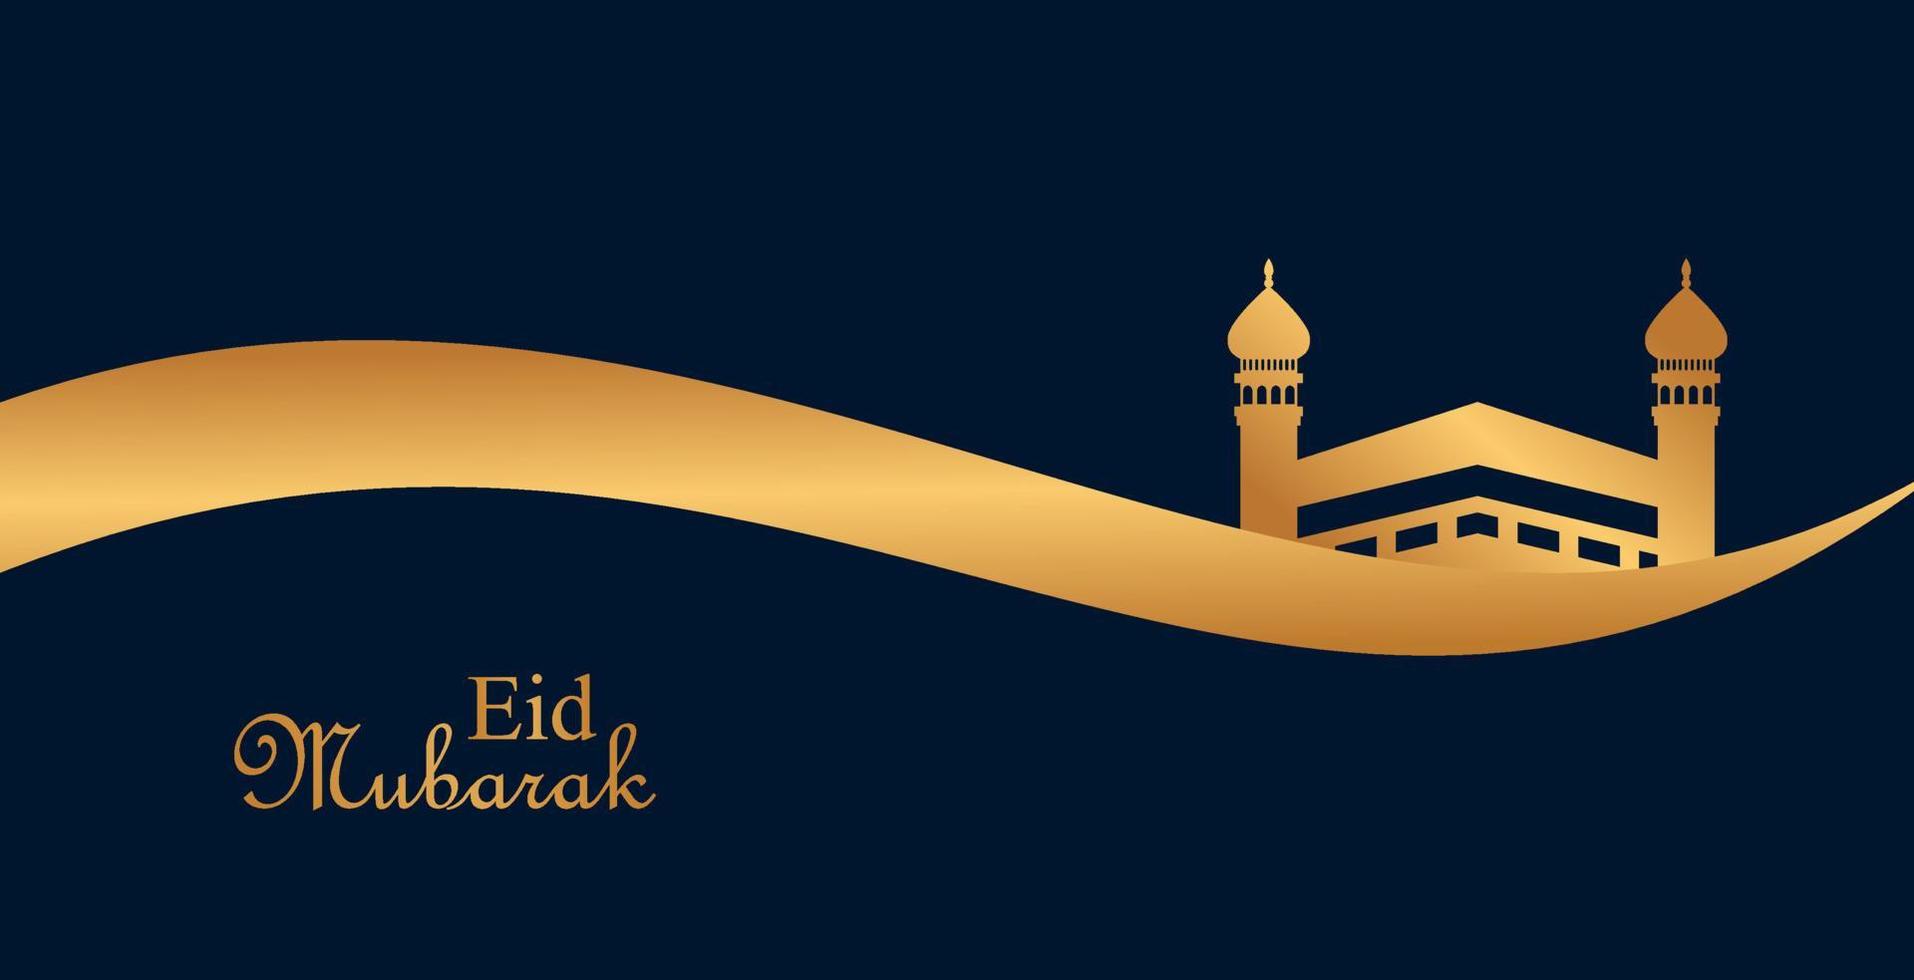 eid mubarak bakgrundsdesign, modern islamisk banderoll, fasta, webb, affisch, flygblad, reklamillustrationsdesign vektor